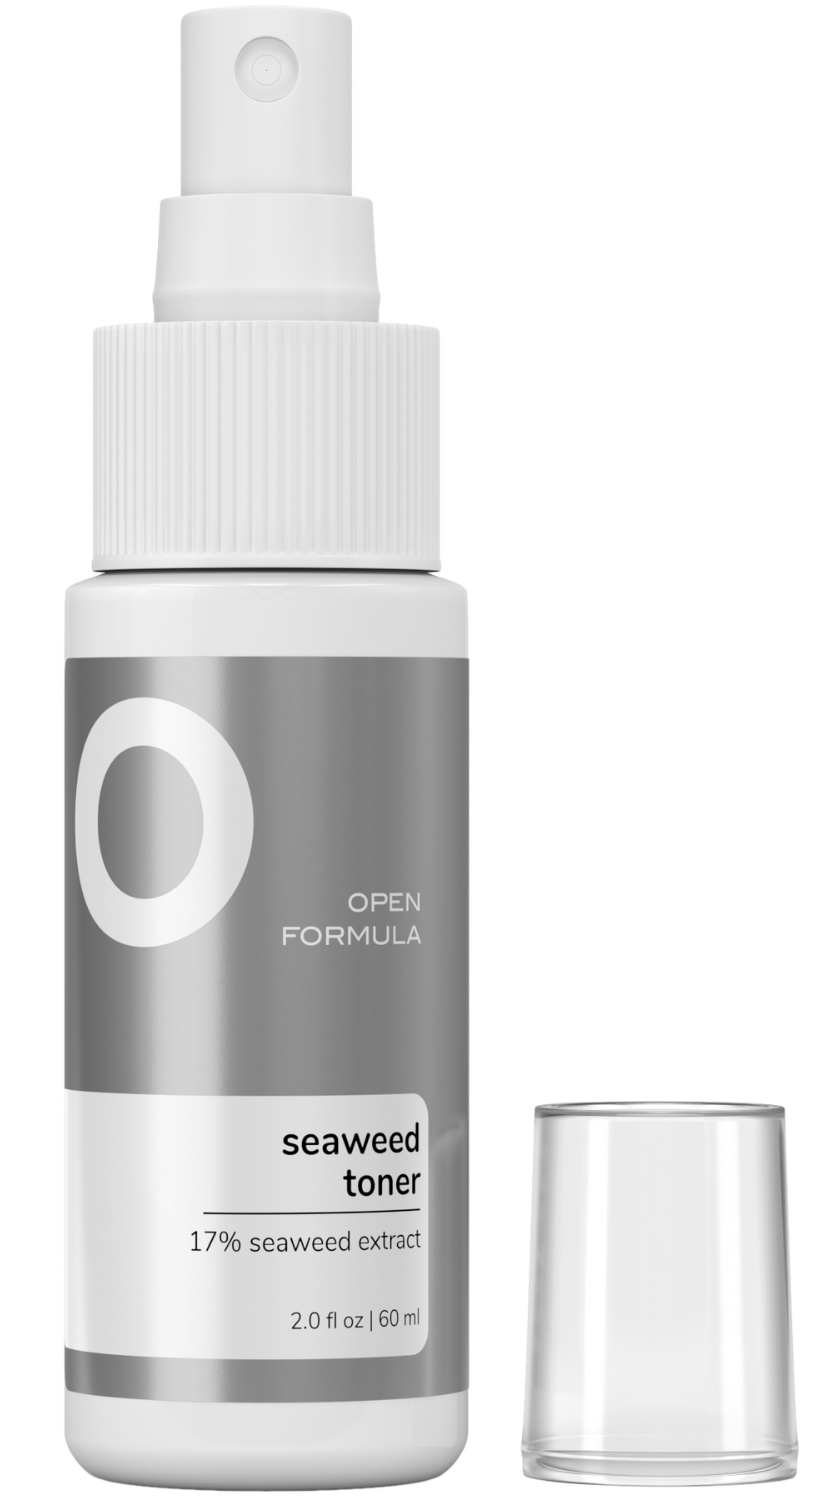 Open Formula Seaweed Toner (17% seaweed extract)